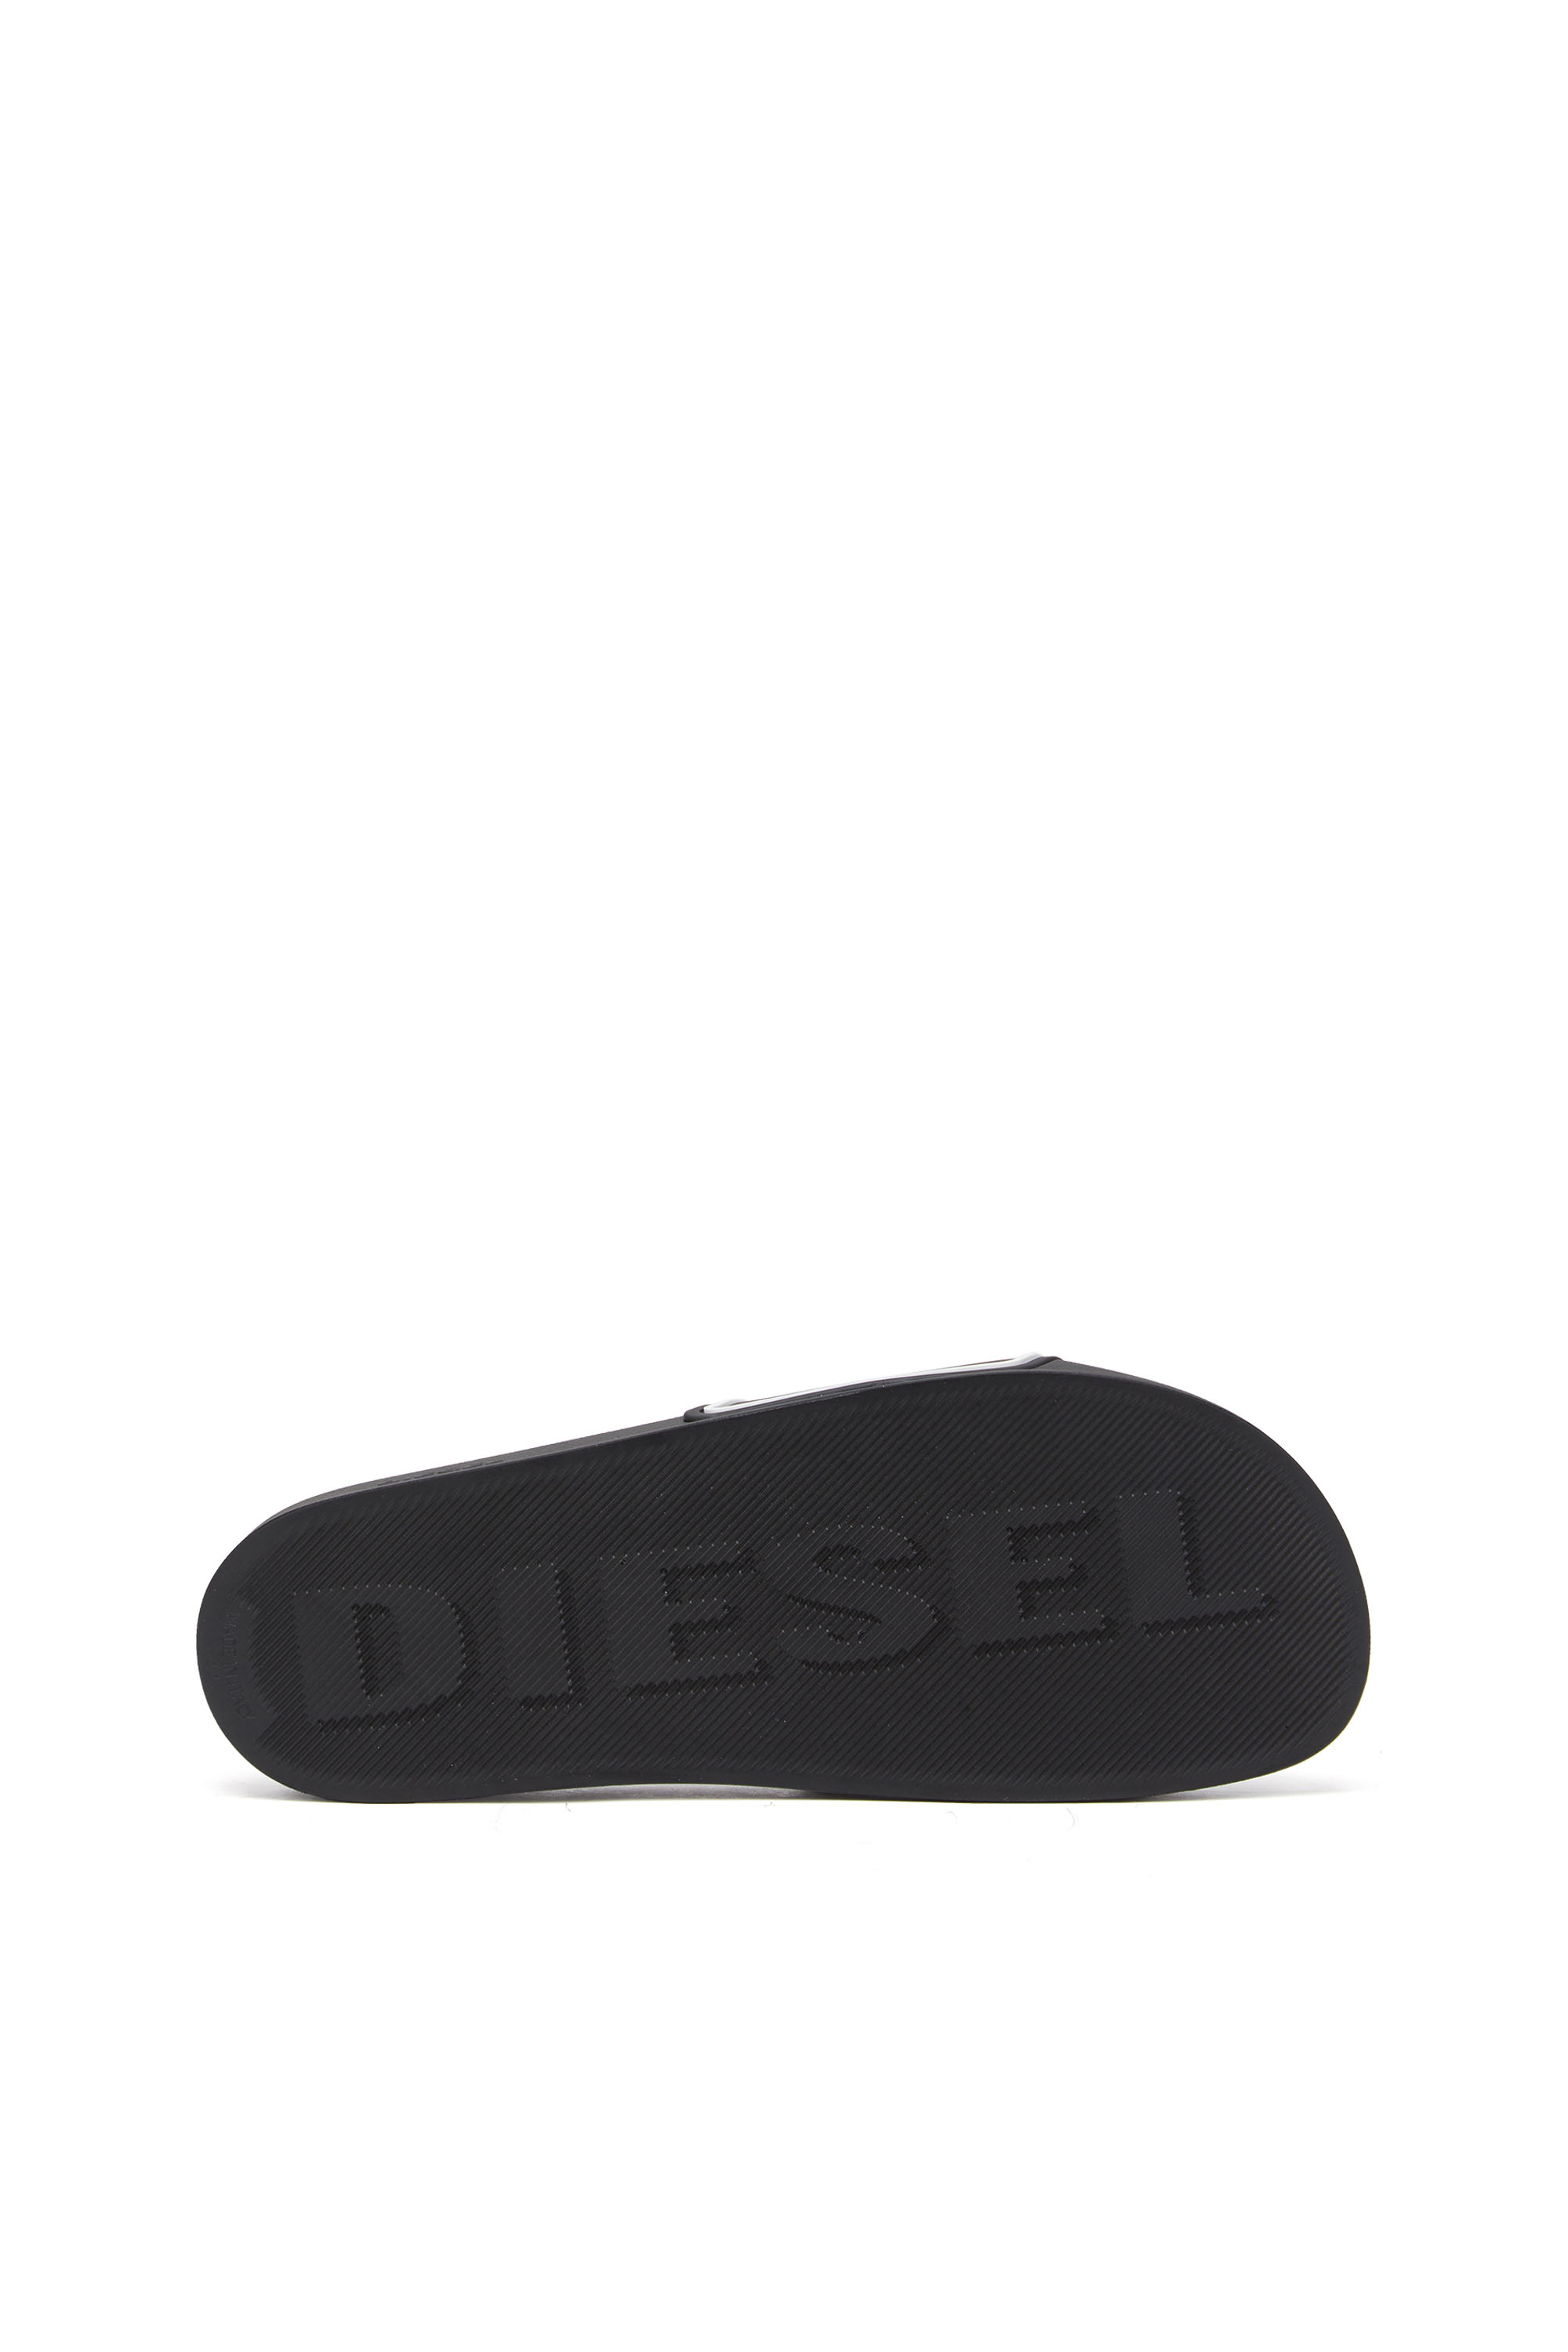 Diesel - SA-MAYEMI CC, Schwarz/Weiß - Image 4